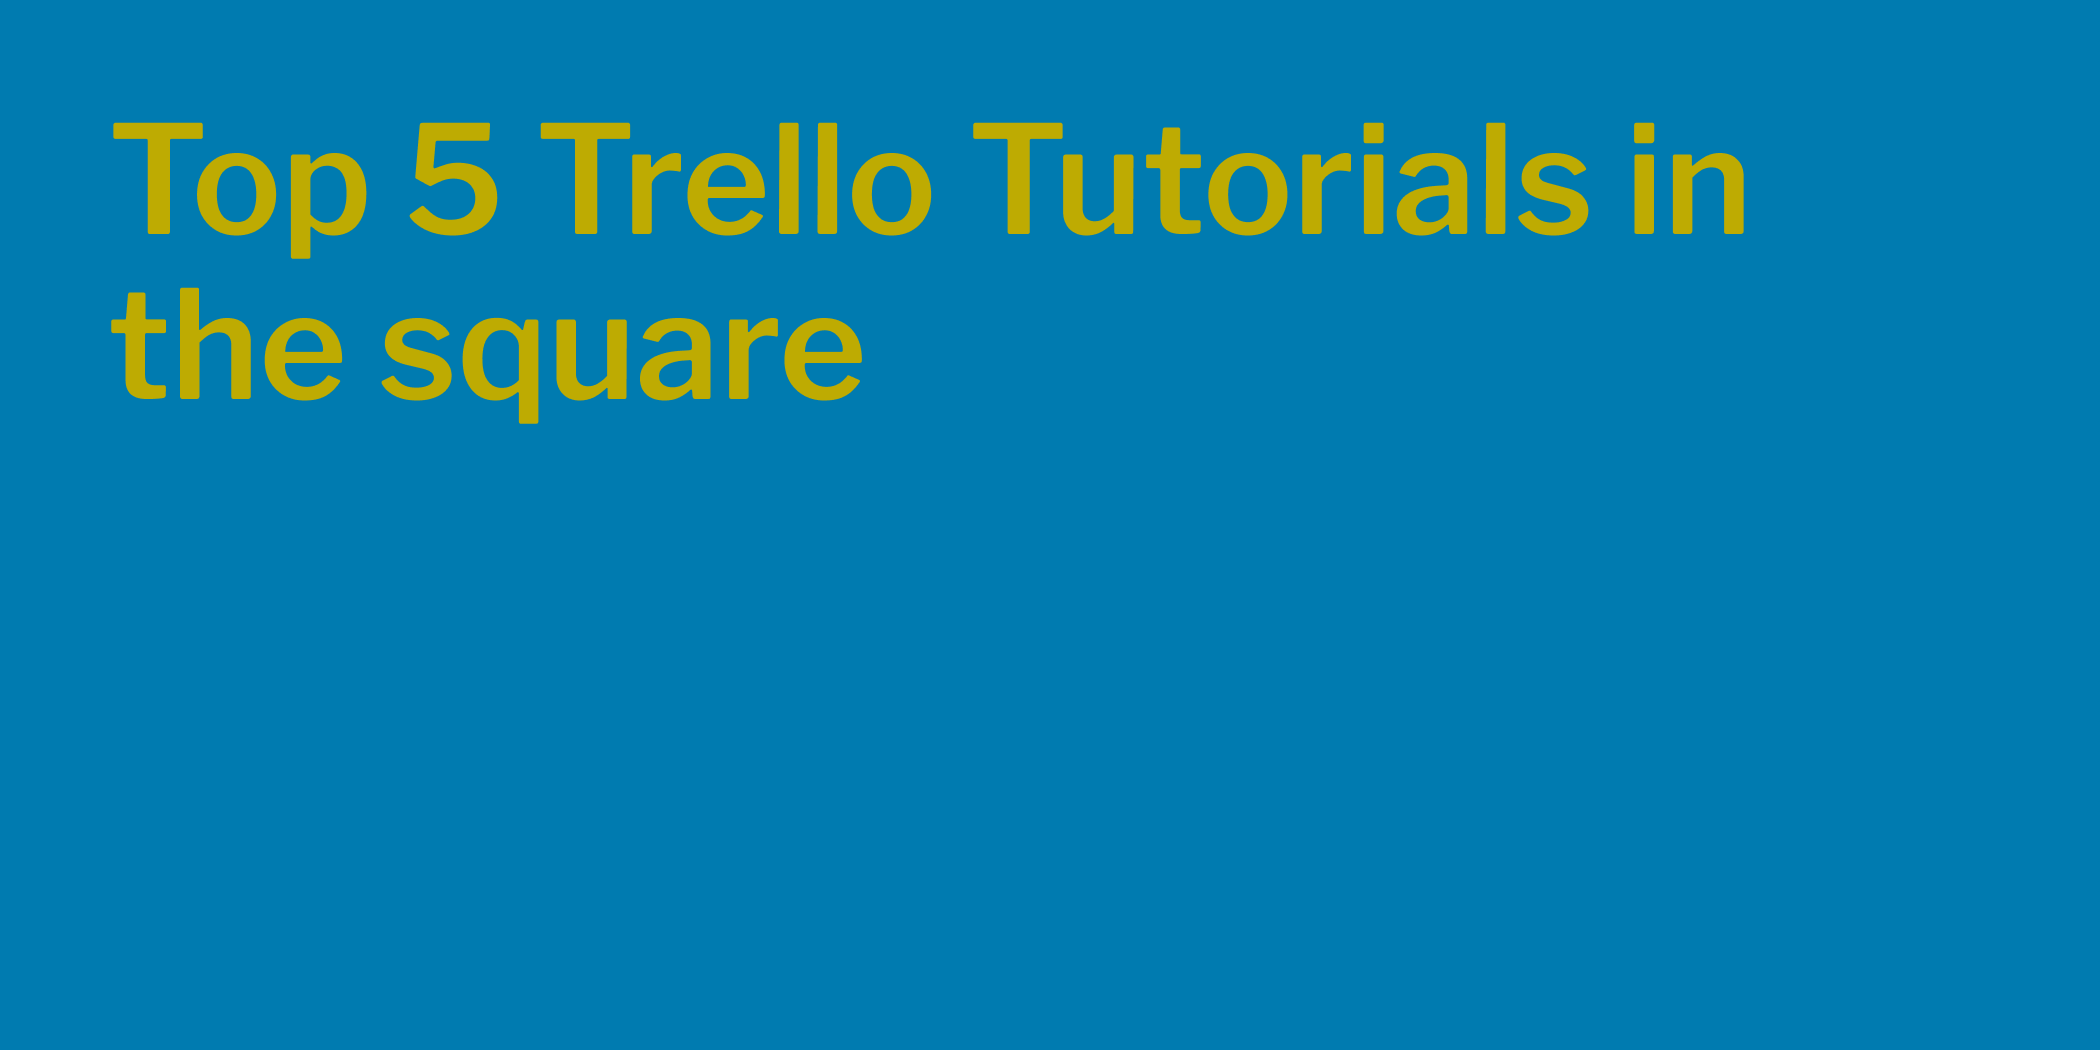 Top 5 Trello Tutorials in the square